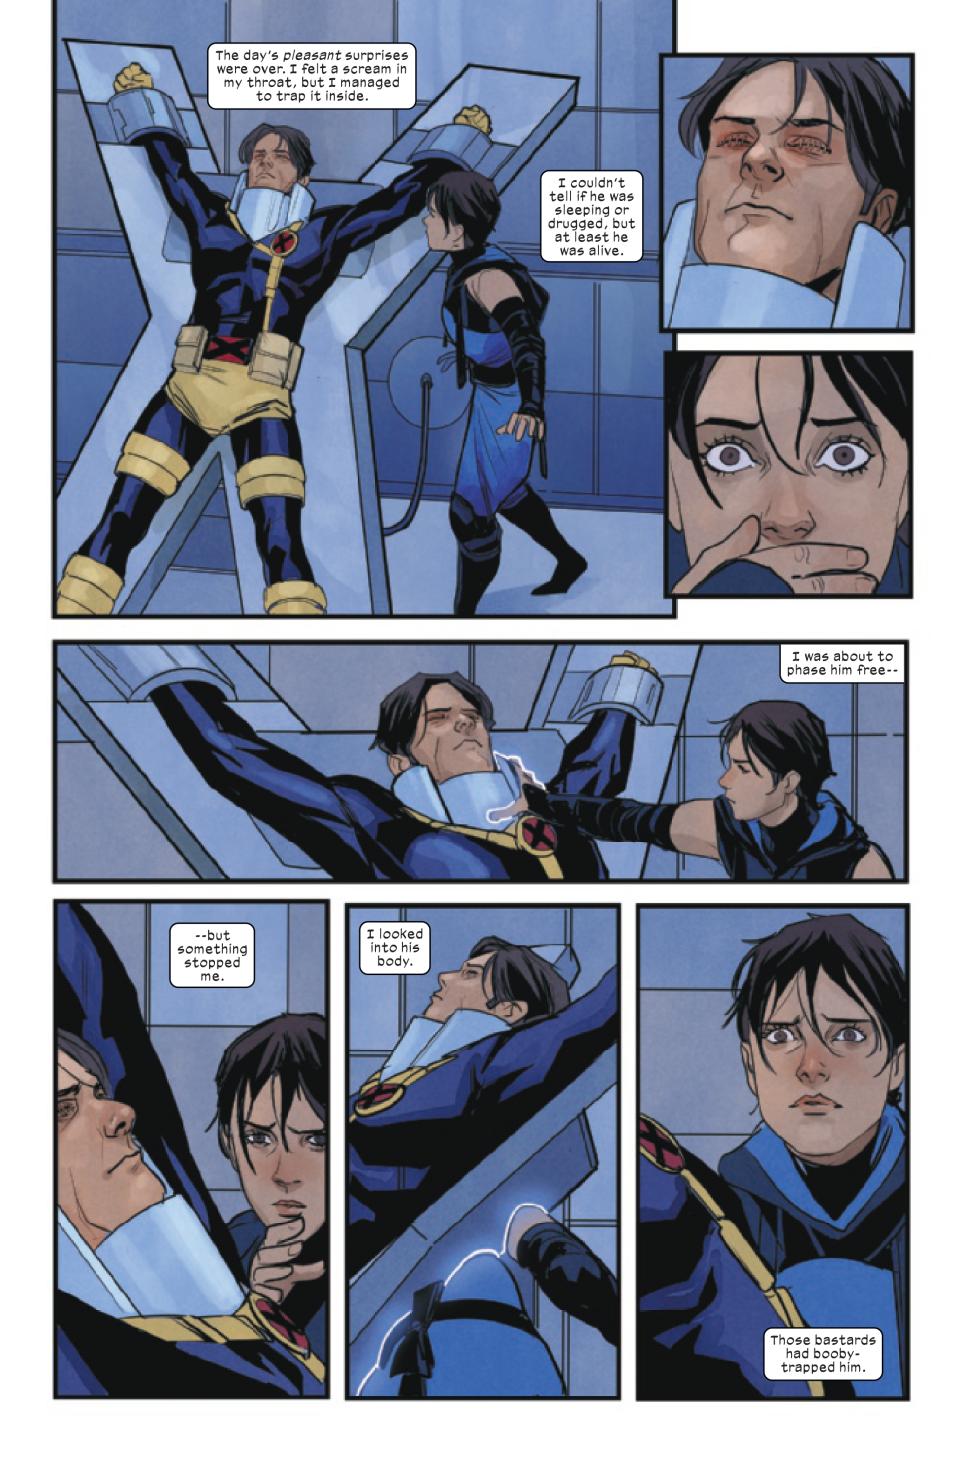 Art from X-Men #27